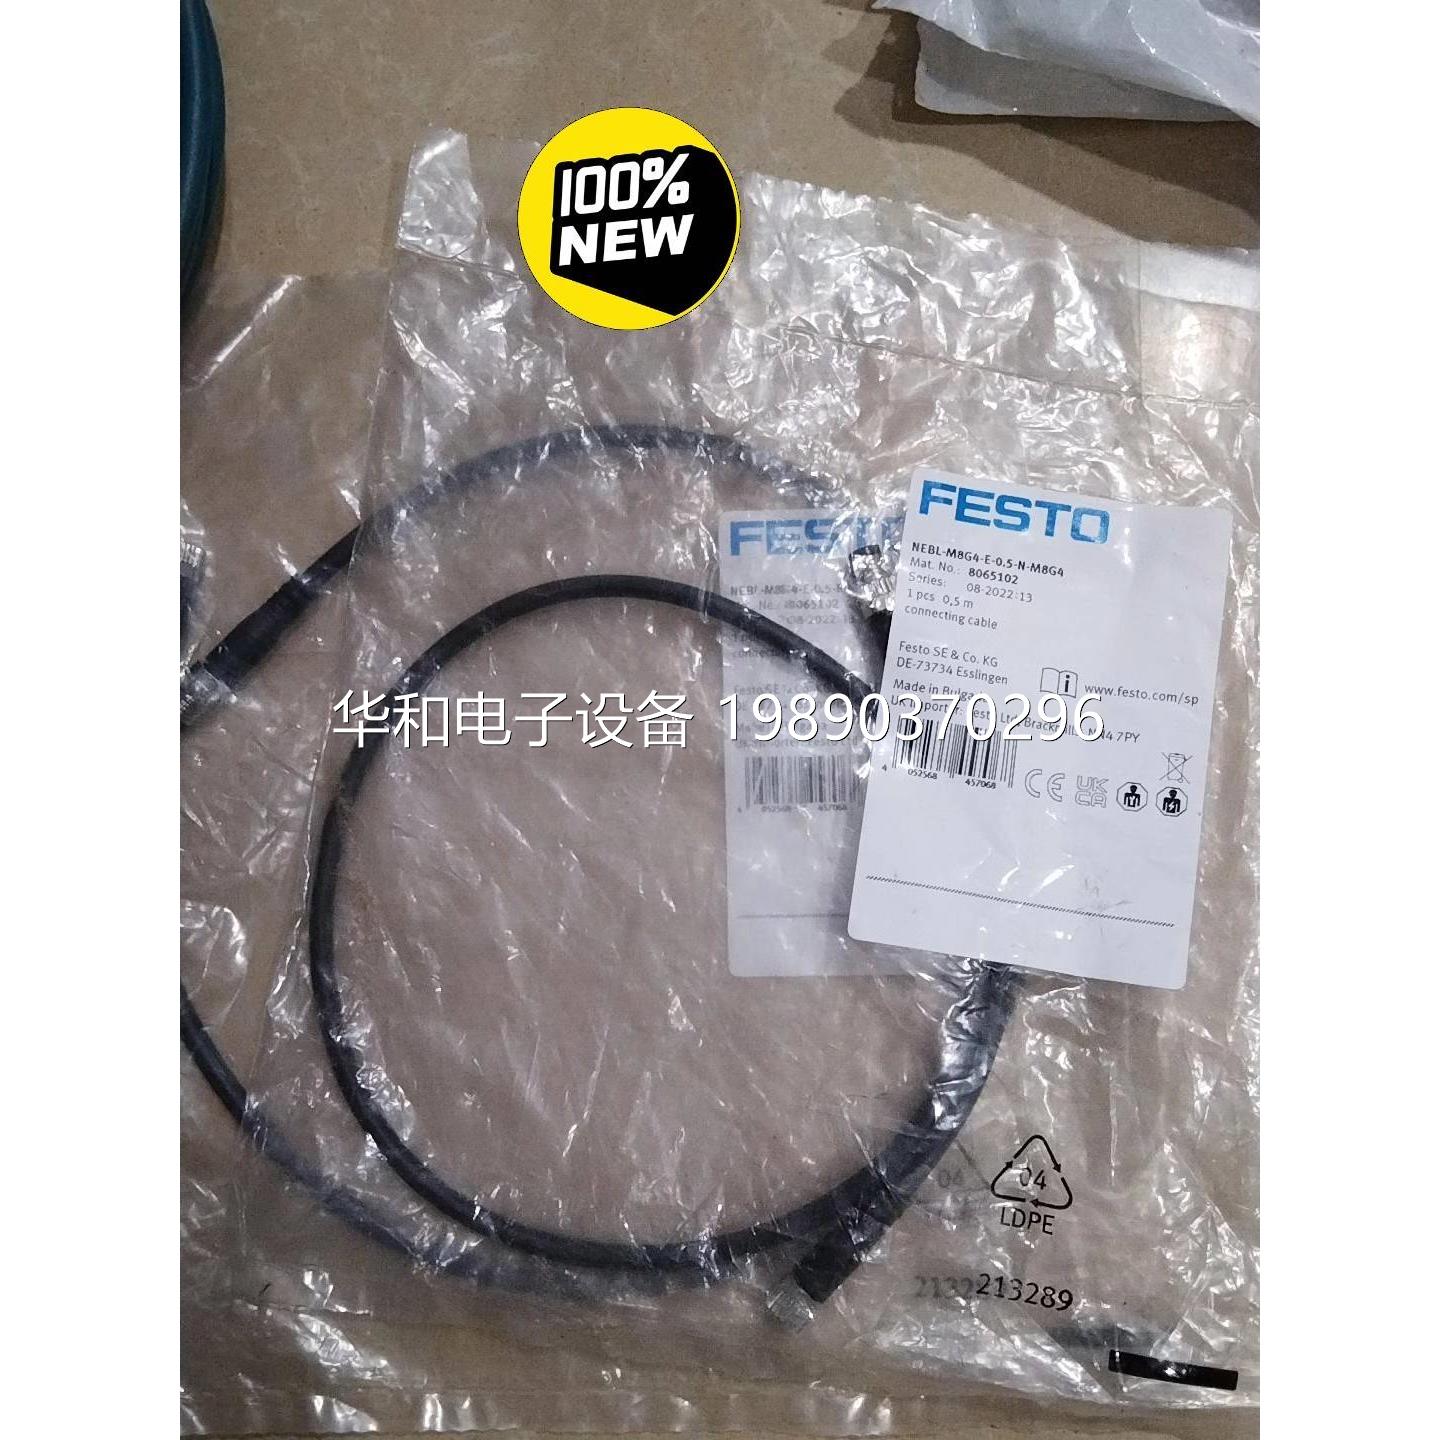 【议价】FESTO费斯托模块电源连接线缆原装,NEBL-M8G4-询价$